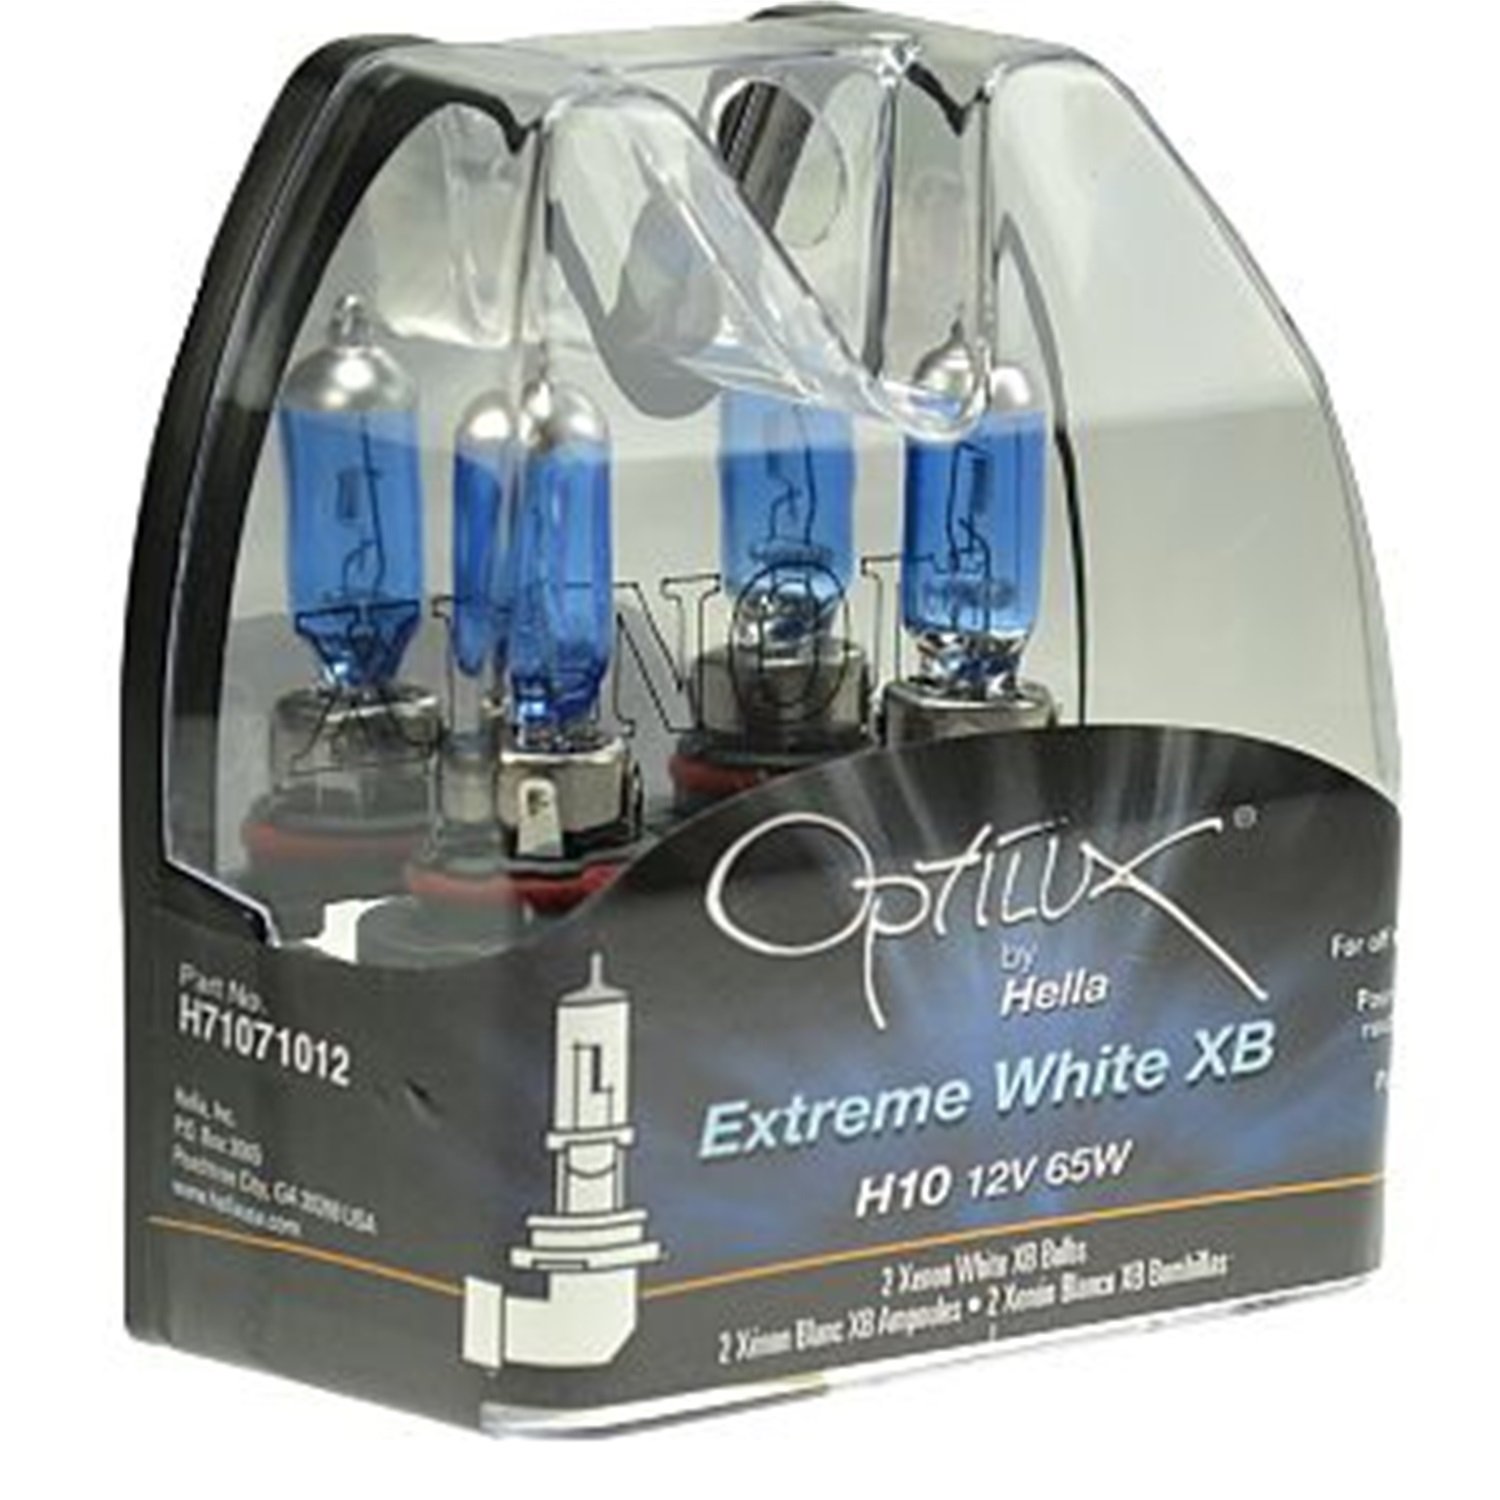 Optilux Extreme White XB Bulbs Bulb Type: H1